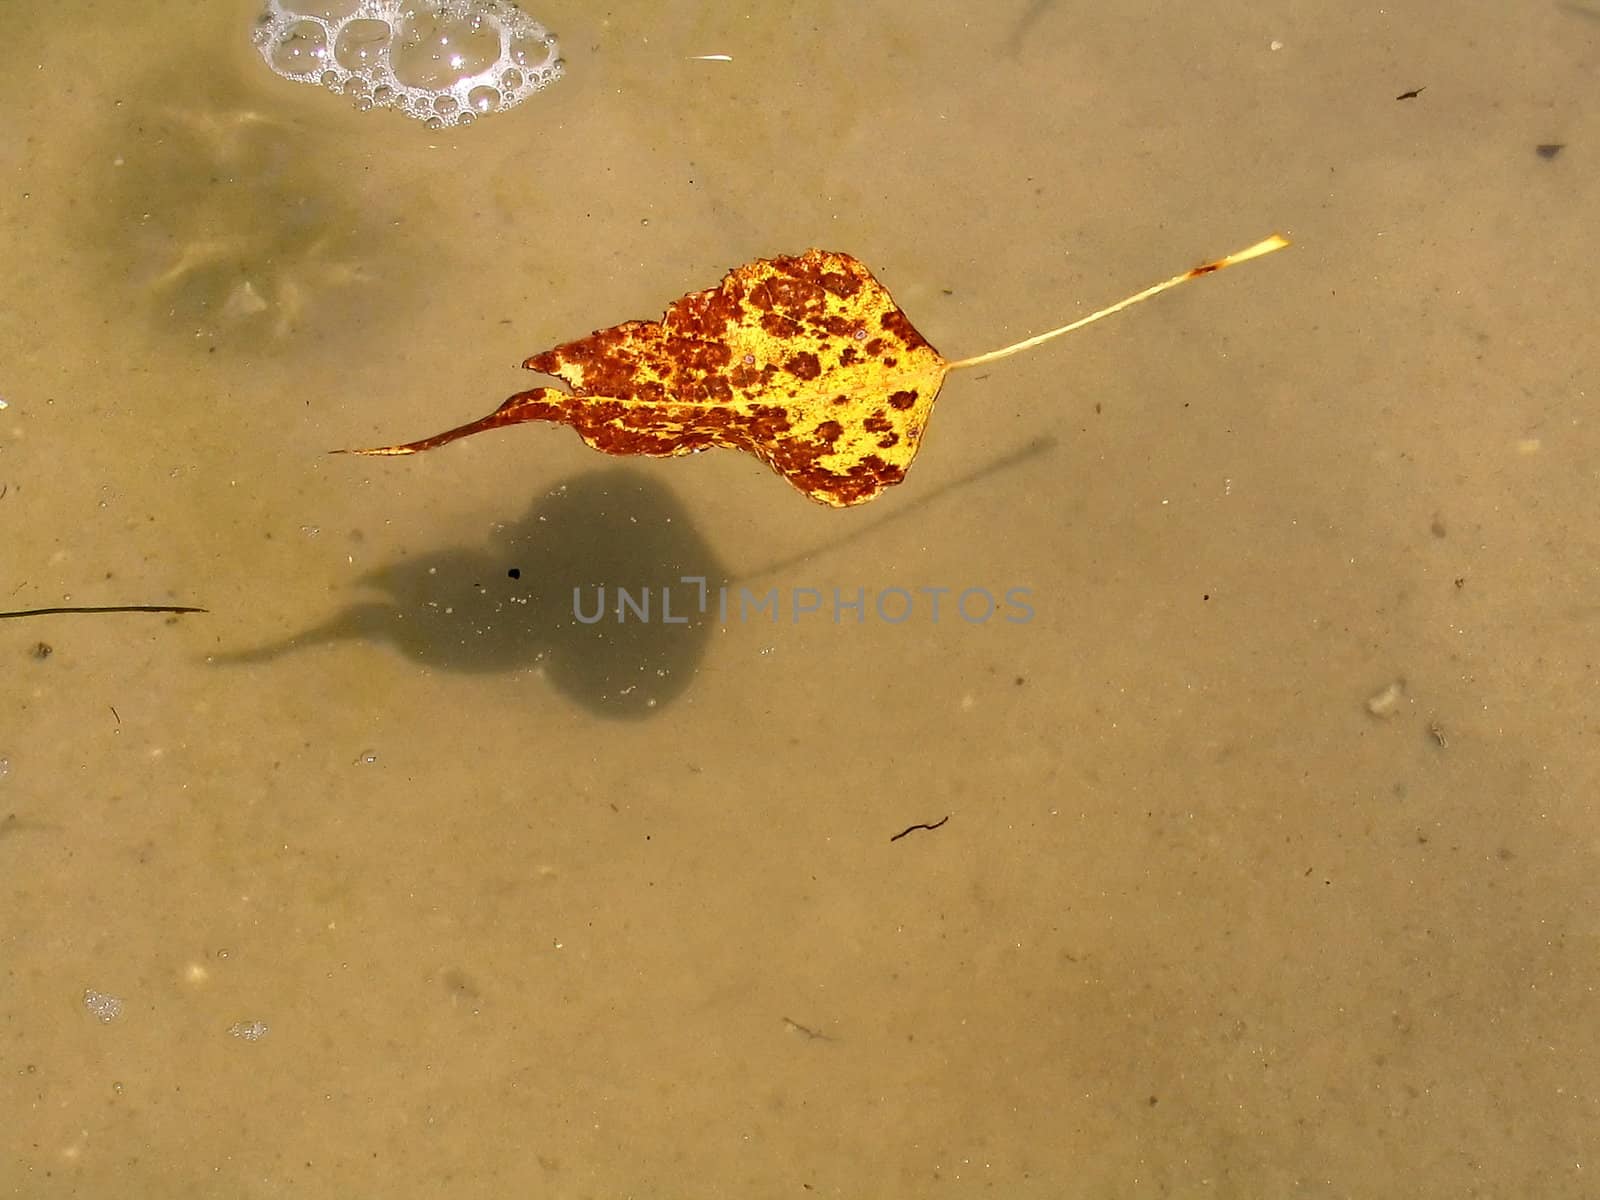 Solitary leaf by ichip